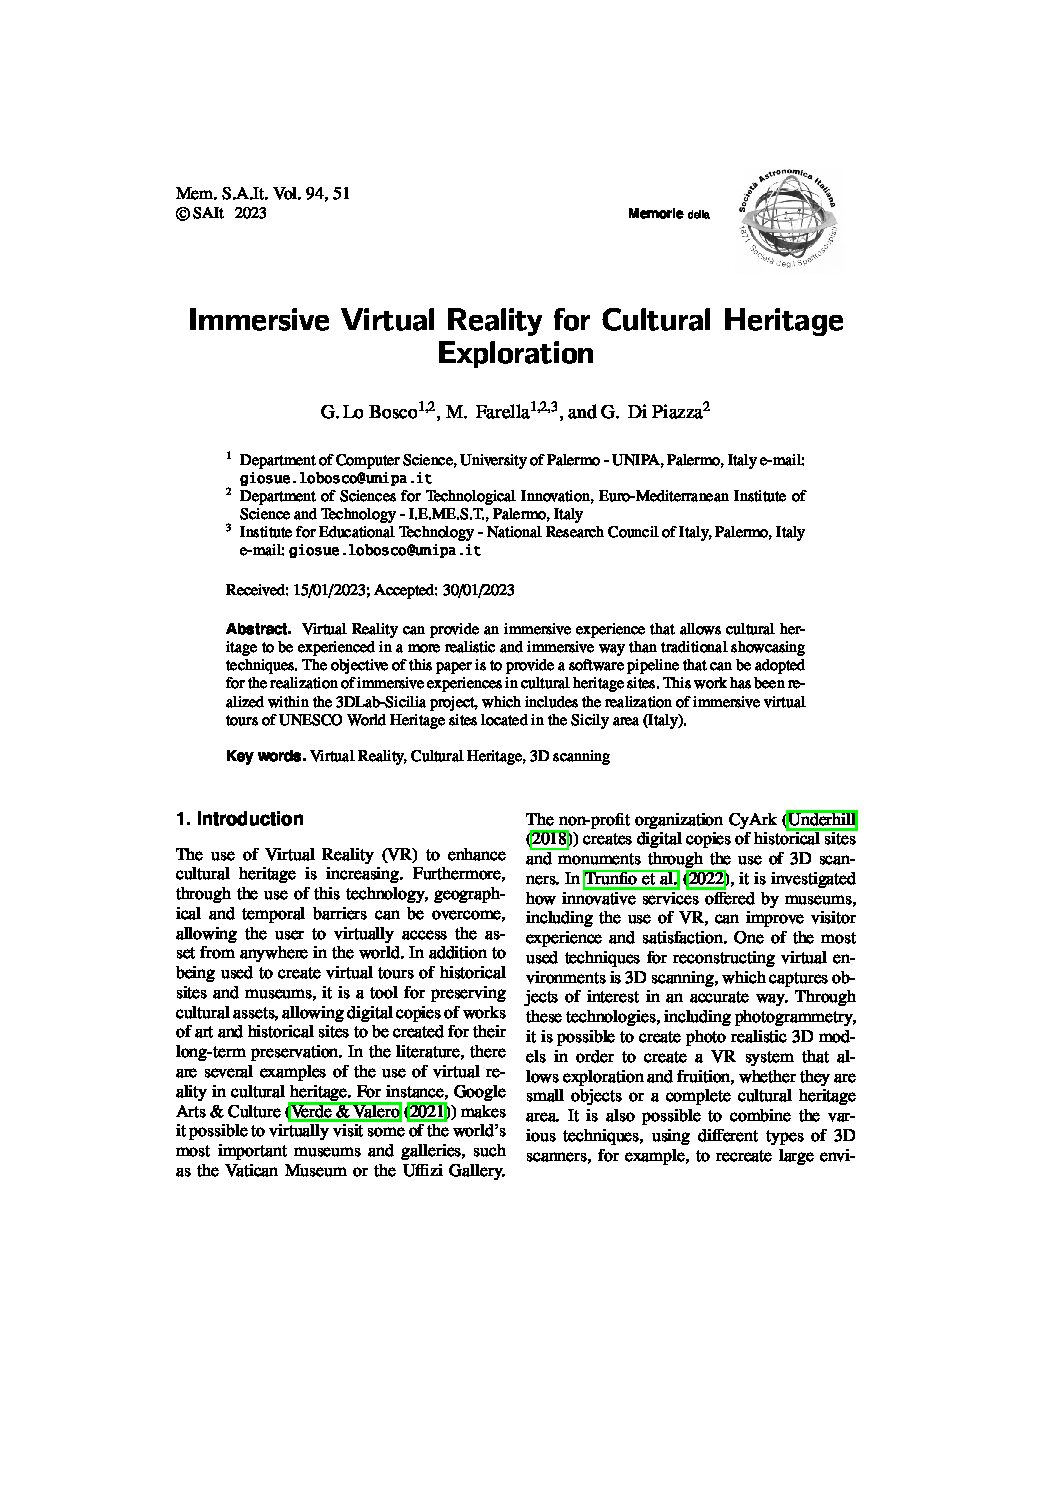 Publicazione dell’articolo “Immersive Virtual Reality for Cultural Heritage Exploration” di G.Lo Bosco